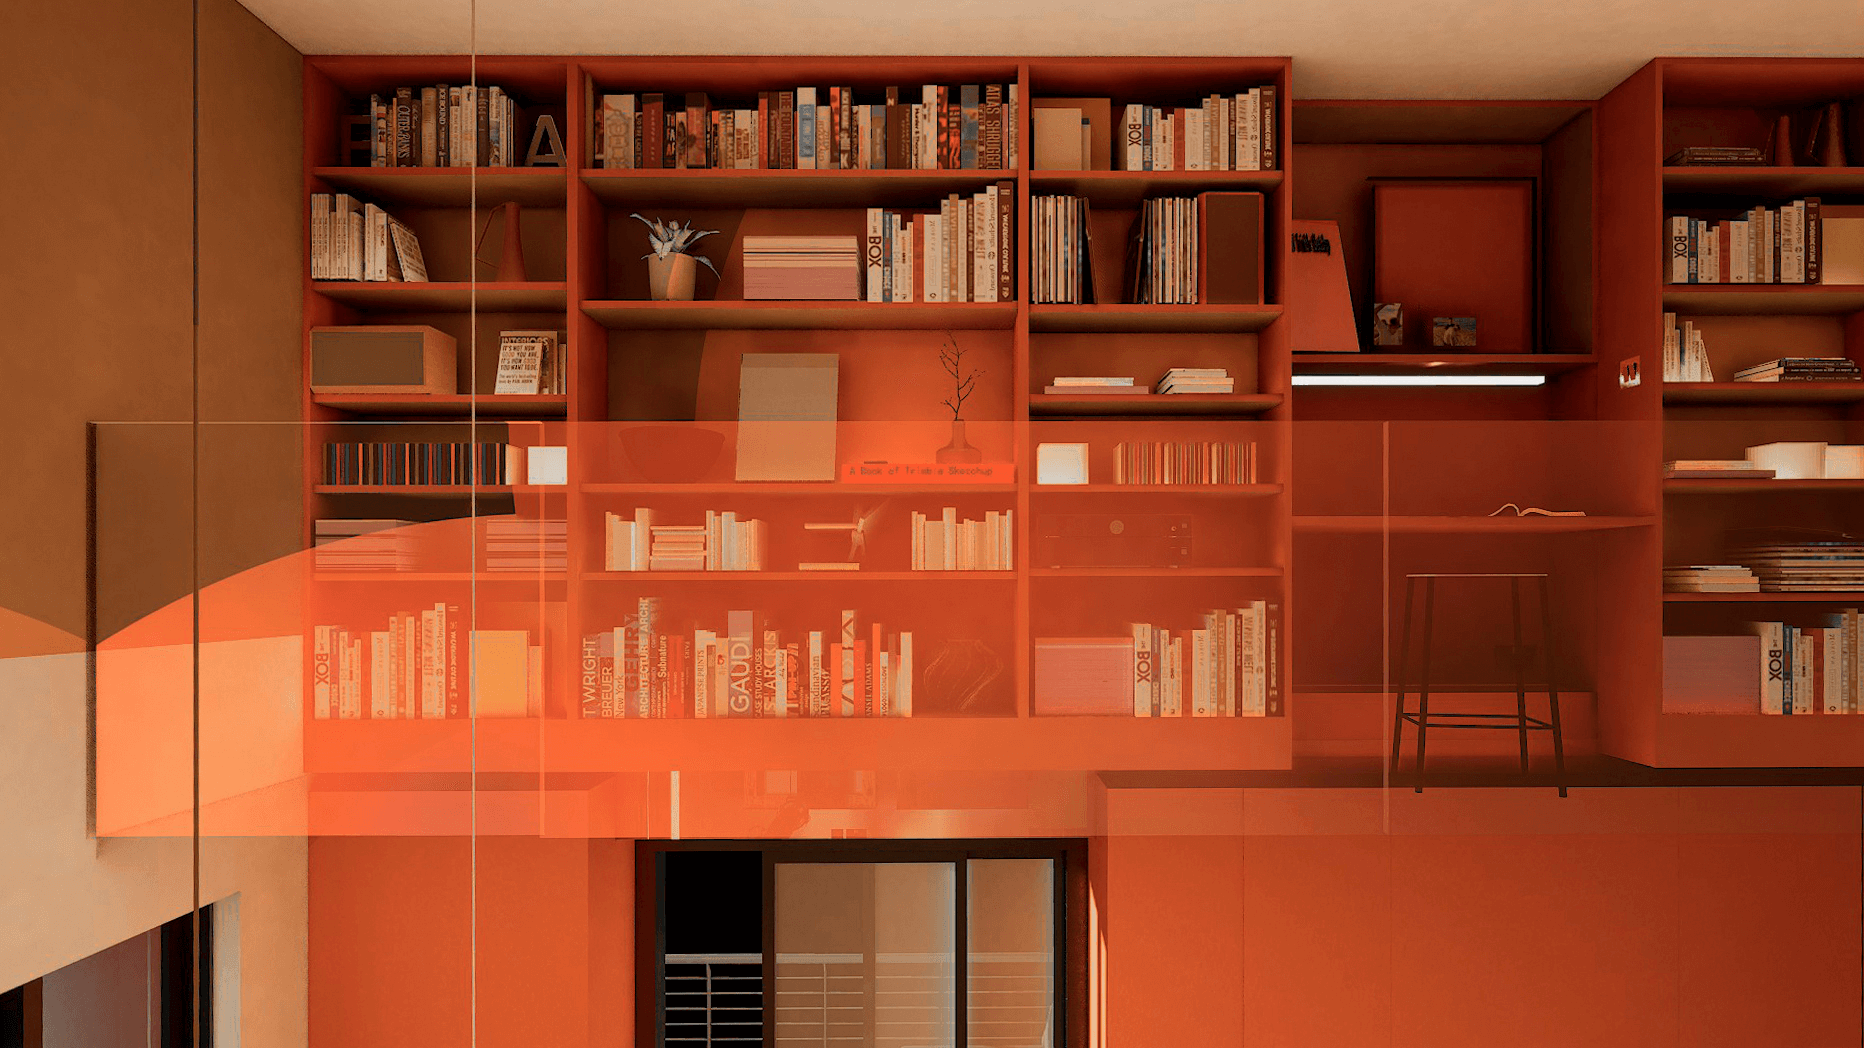 Studio Flat Bookshelves Render